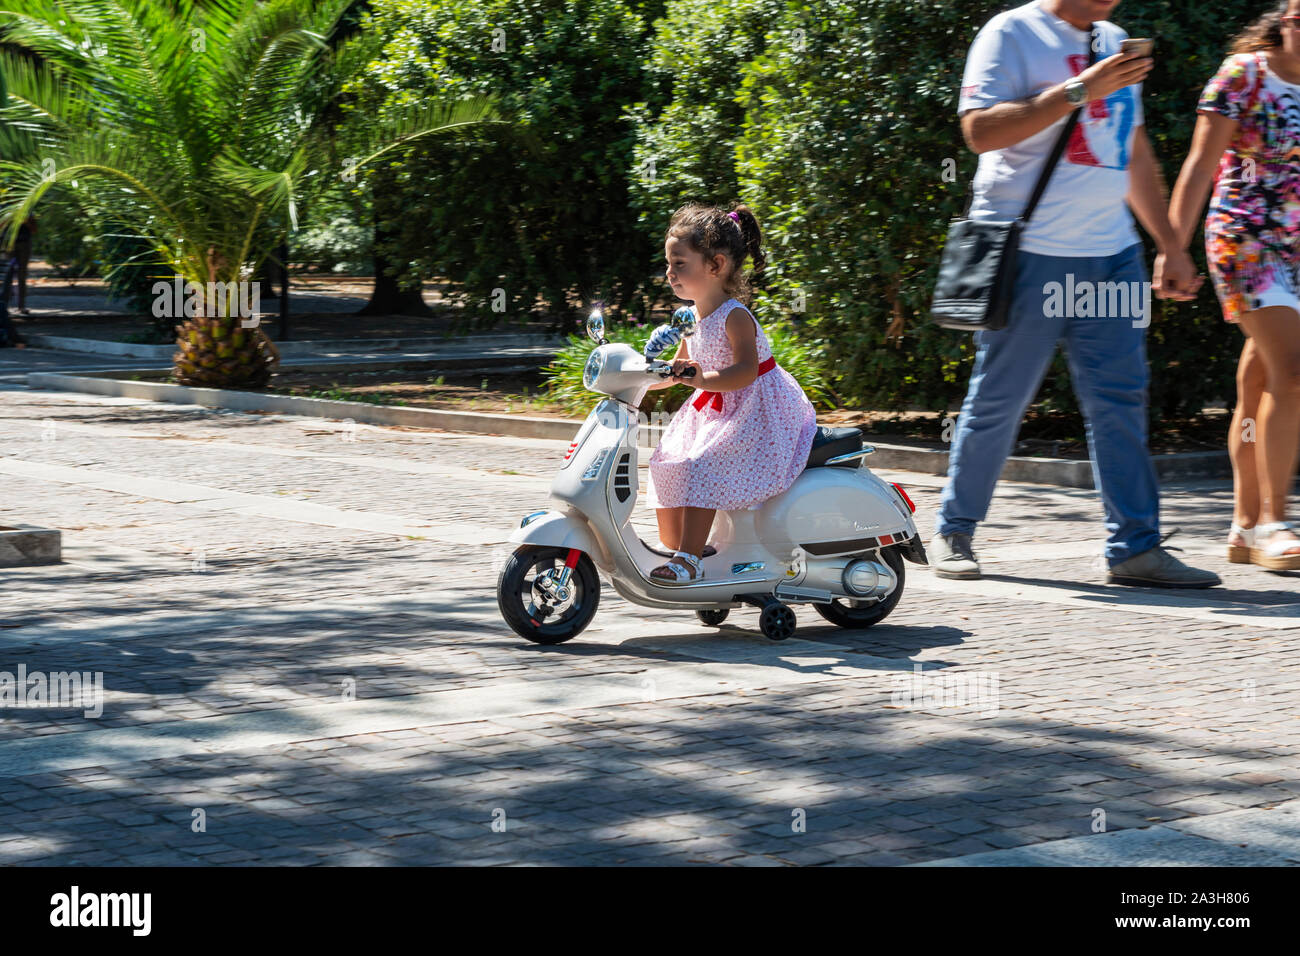 Young girl riding toy scooter in Villa Comunale public garden (Giardini Pubblici Giuseppe Garibaldi) in Lecce, Apulia (Puglia) in Southern Italy Stock Photo